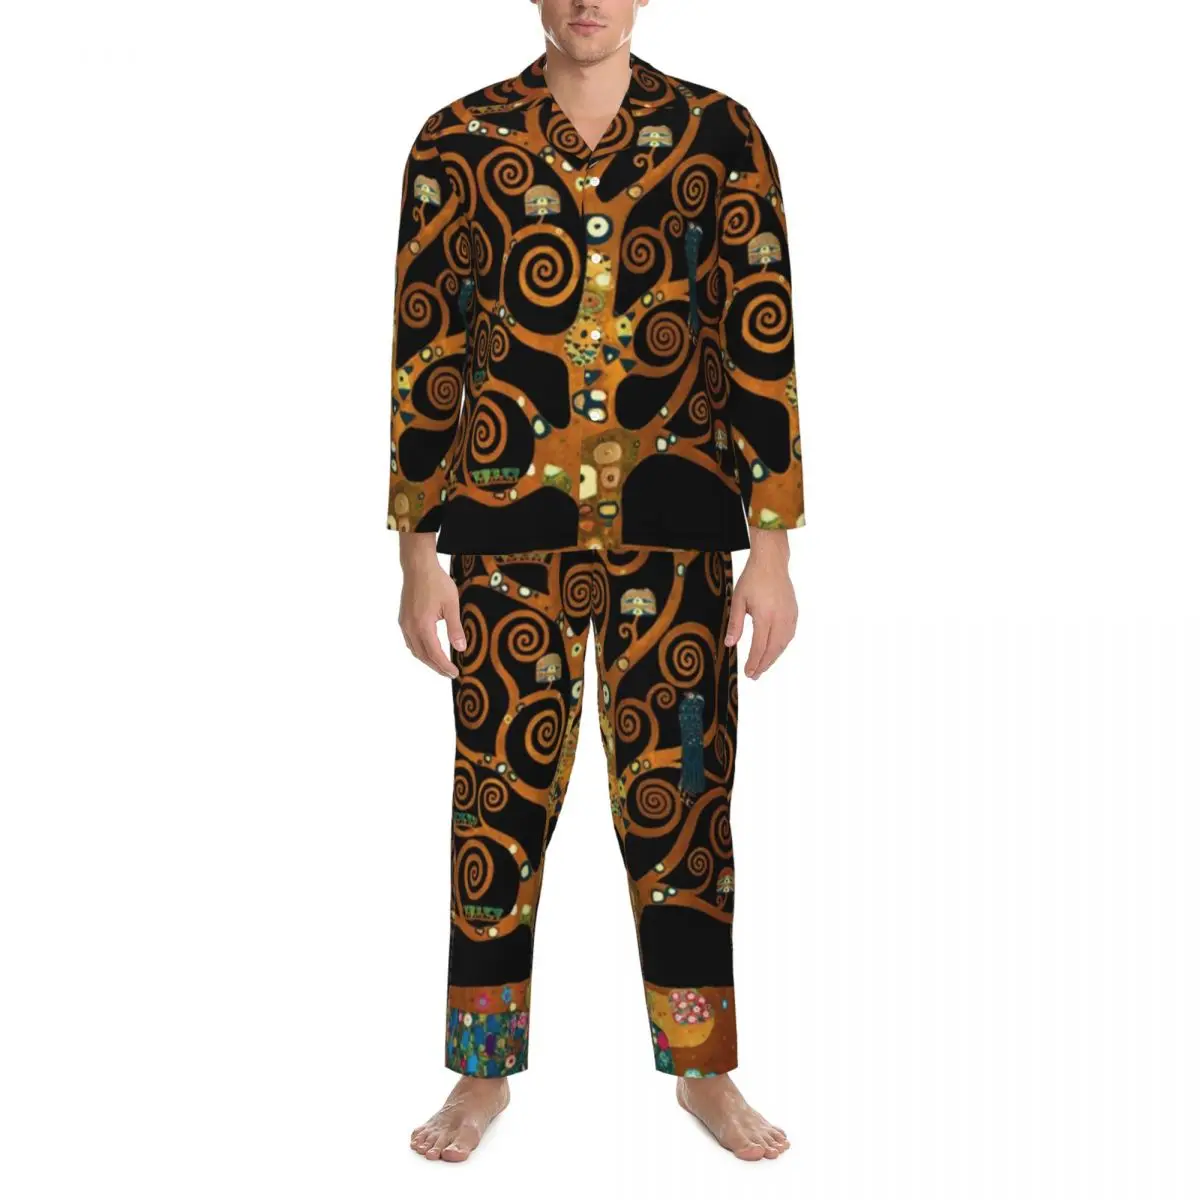 

Пижама Мужская с принтом Густава Климта, одежда для сна Ночная с деревом жизни, 2 предмета, повседневные пижамные комплекты, домашний костюм оверсайз с длинным рукавом